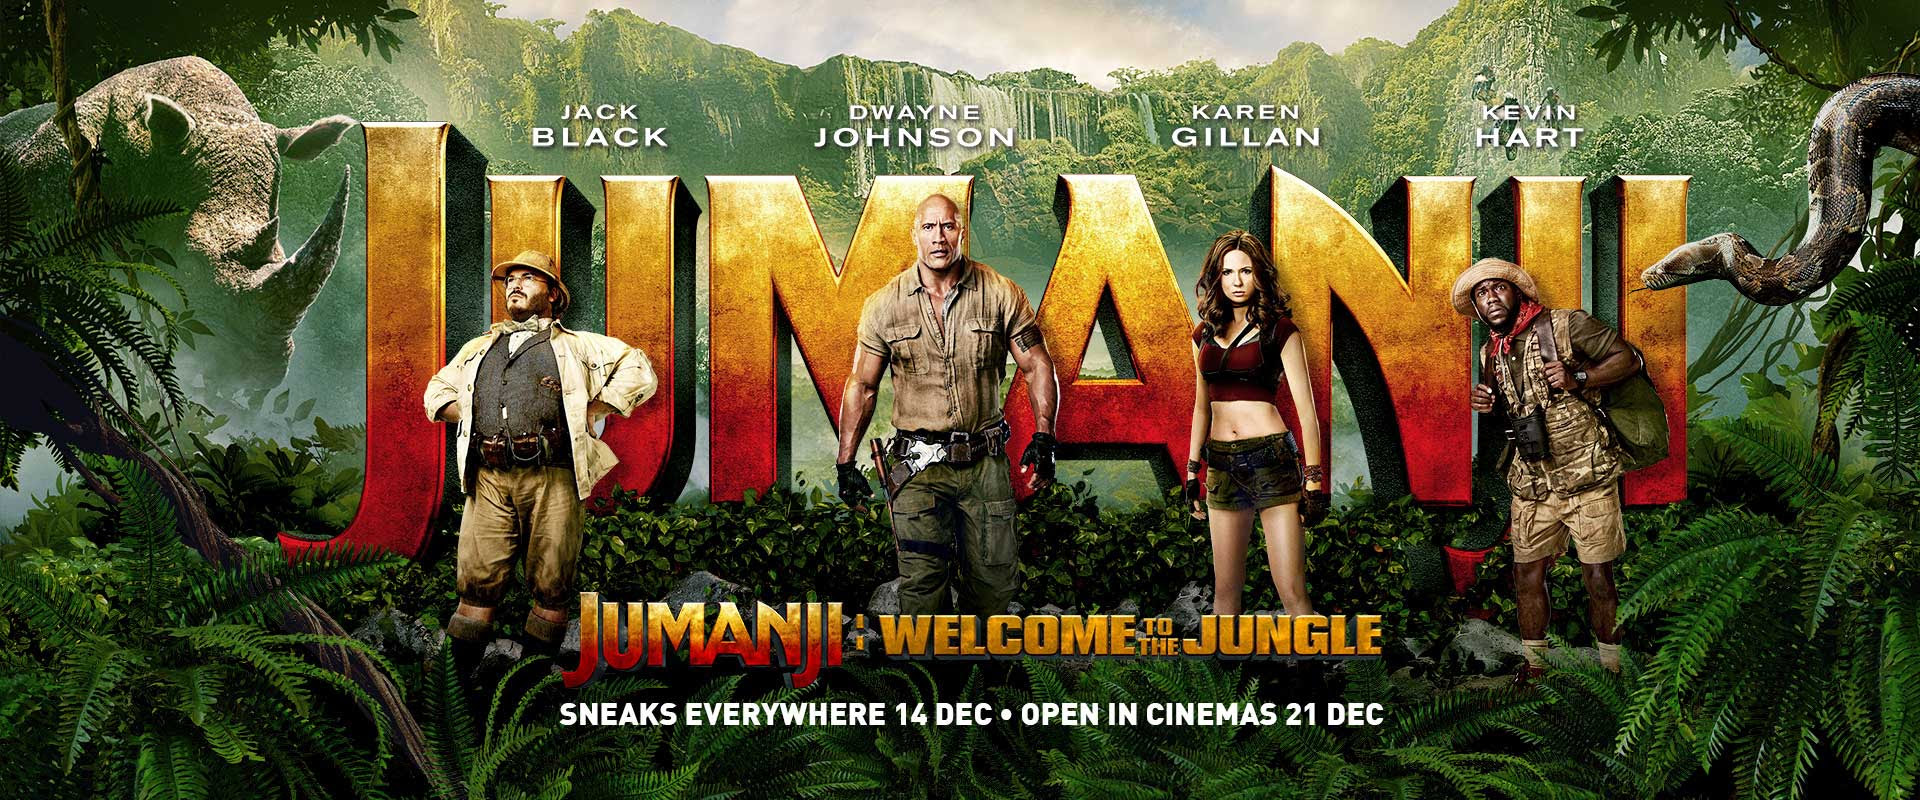 Image result for jumanji poster 2017